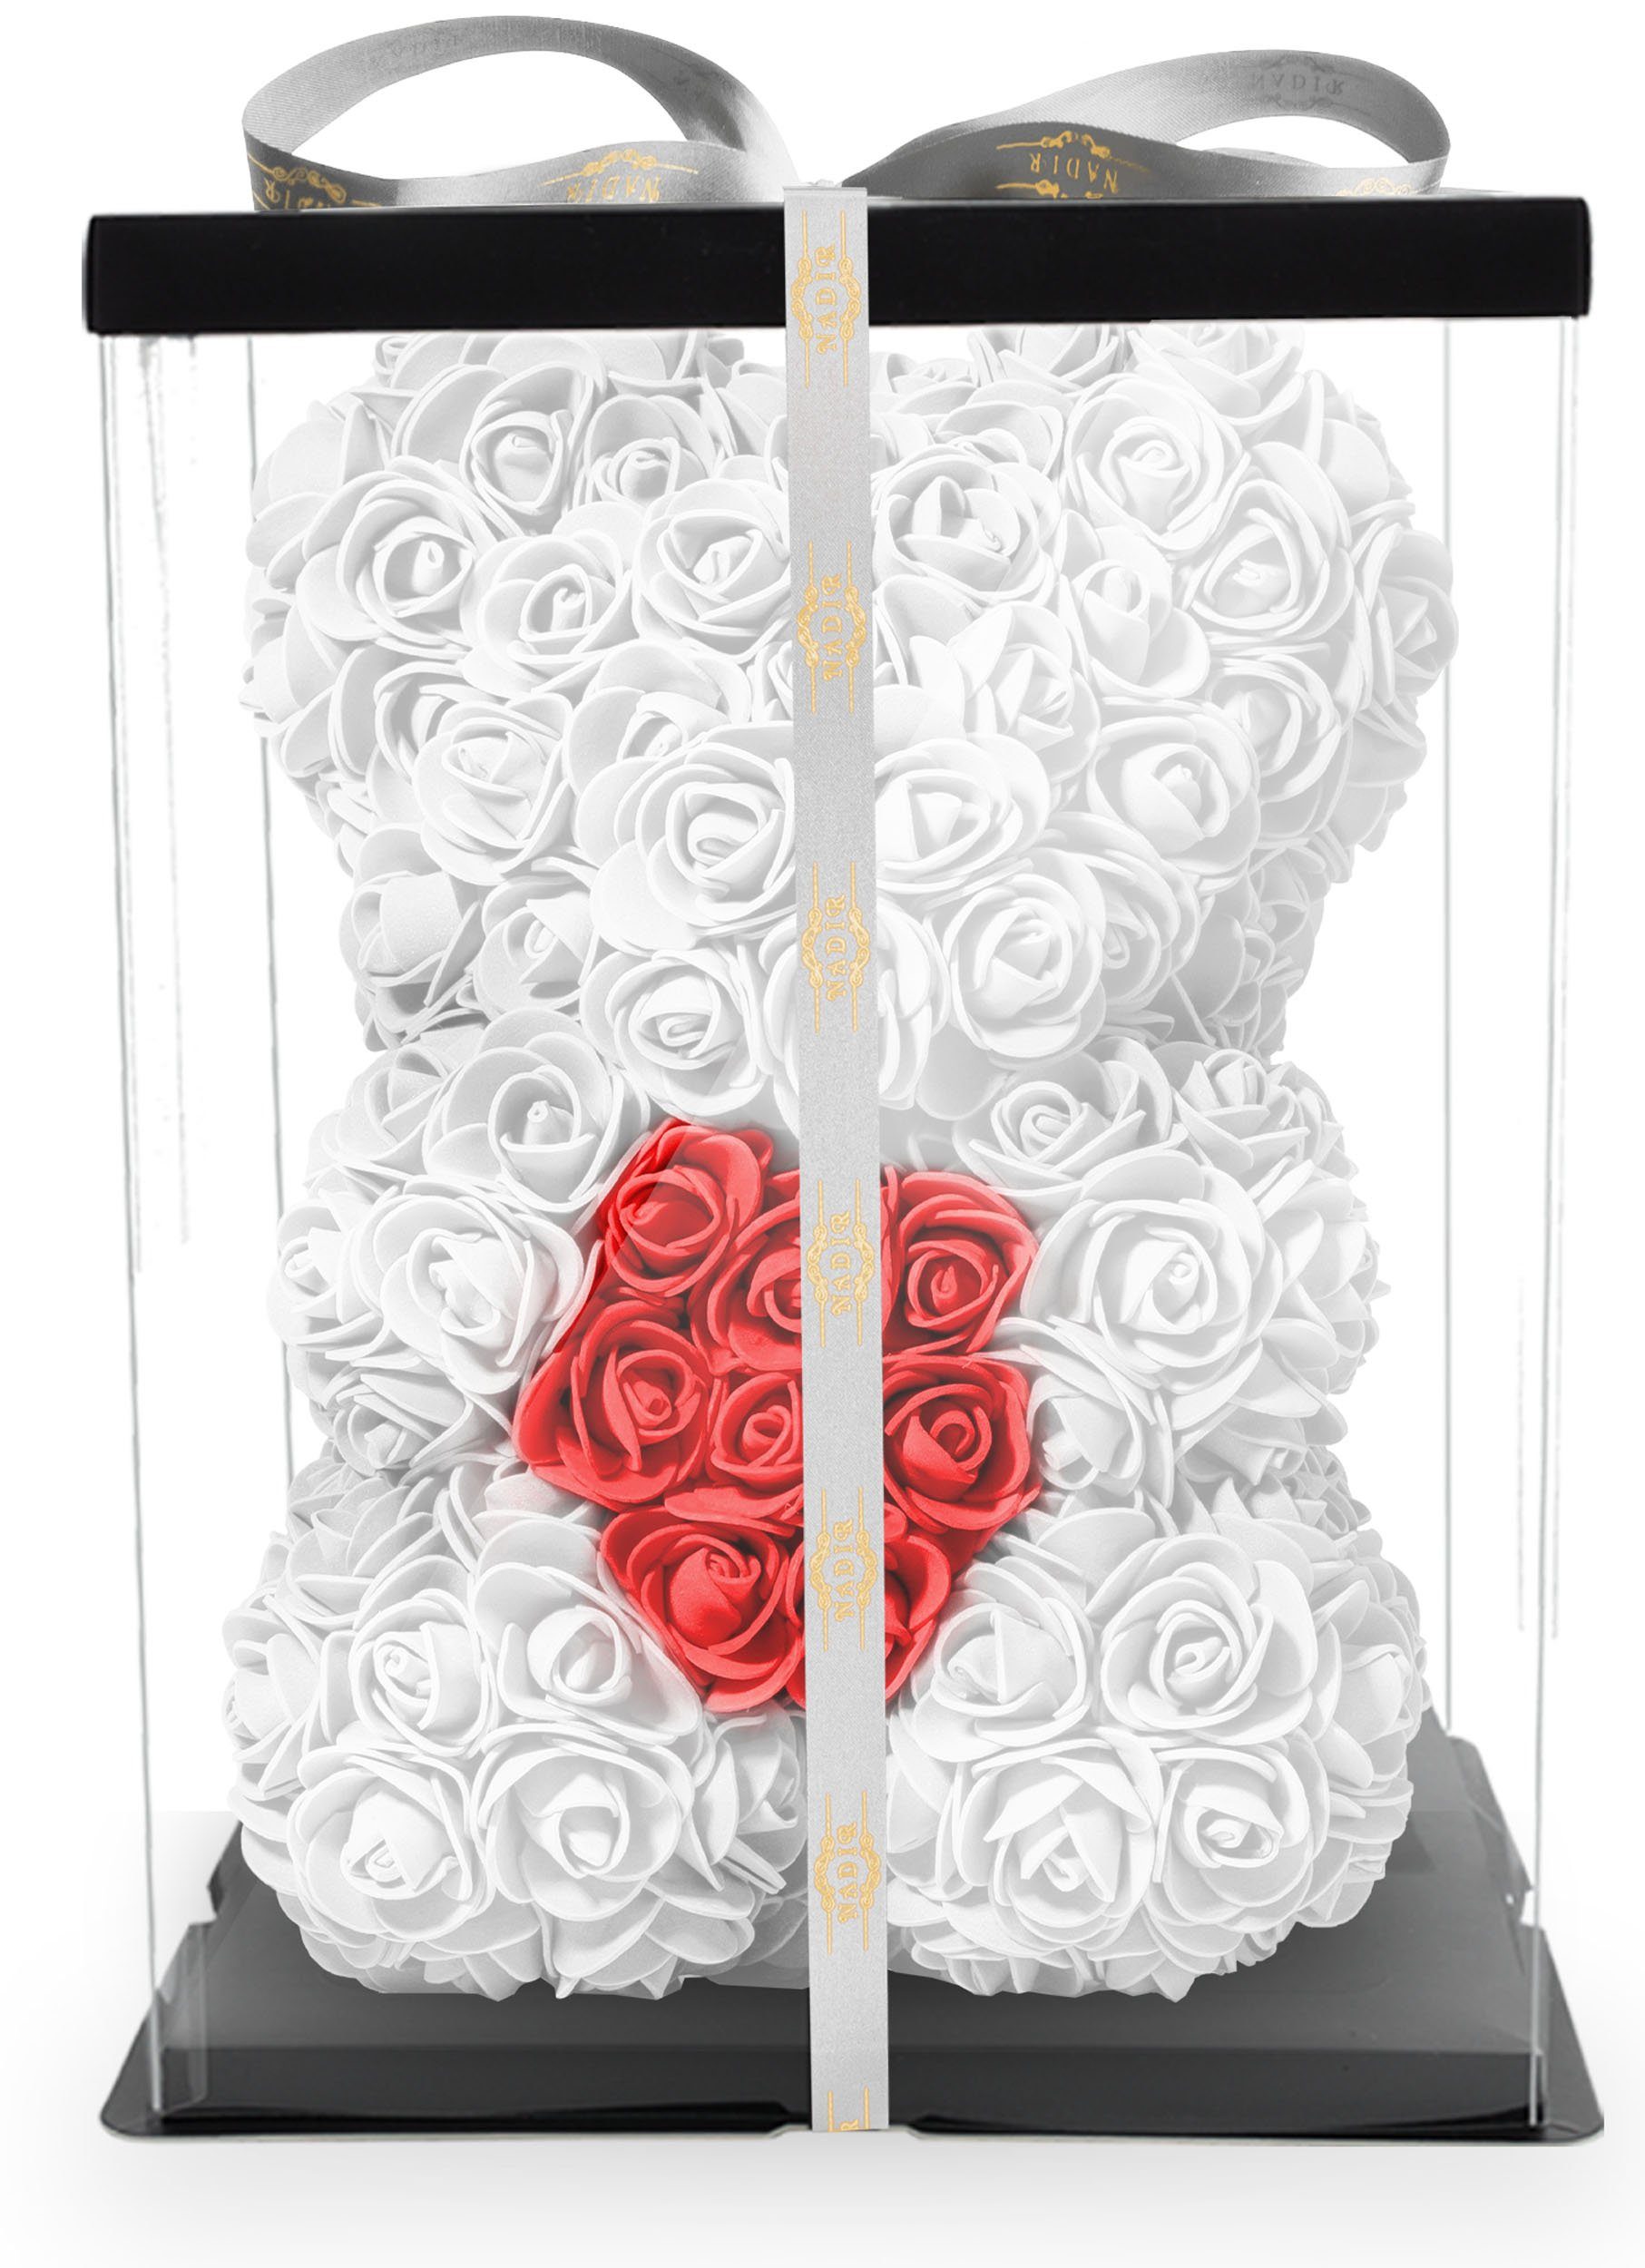 Kunstblume Rosenbär mit Geschenkbox versch. Farben mit Herz - Geschenk für Freundin Jahrestag Geburtstag Hochzeit Geburtstagsgeschenk Freundin 25 cm Ewige Rosen, NADIR